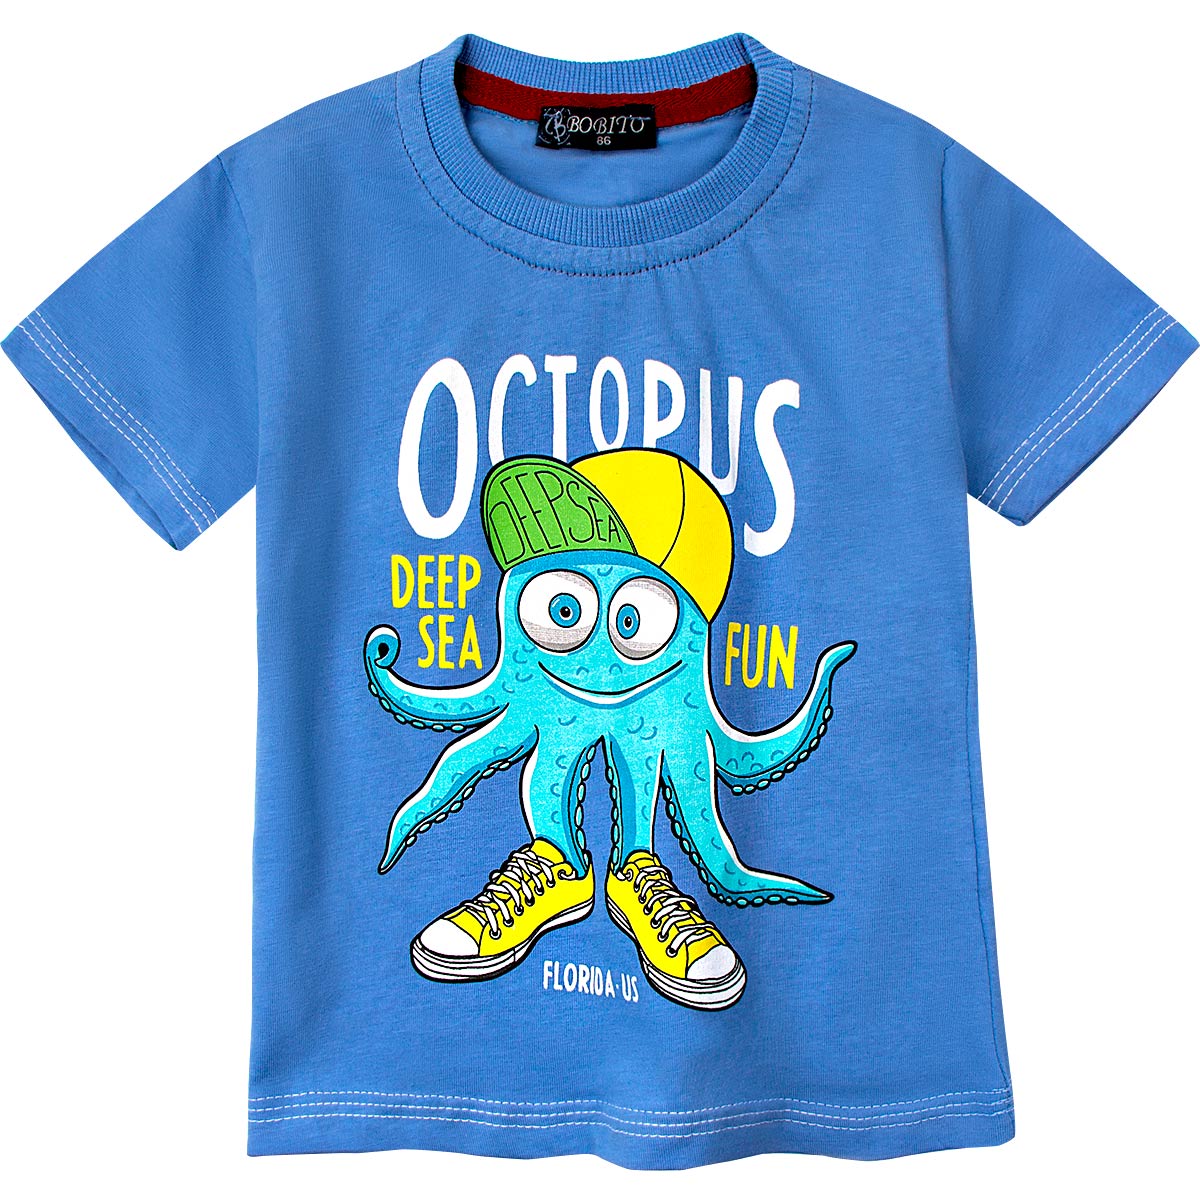 Футболка Bobito Octopus для мальчика